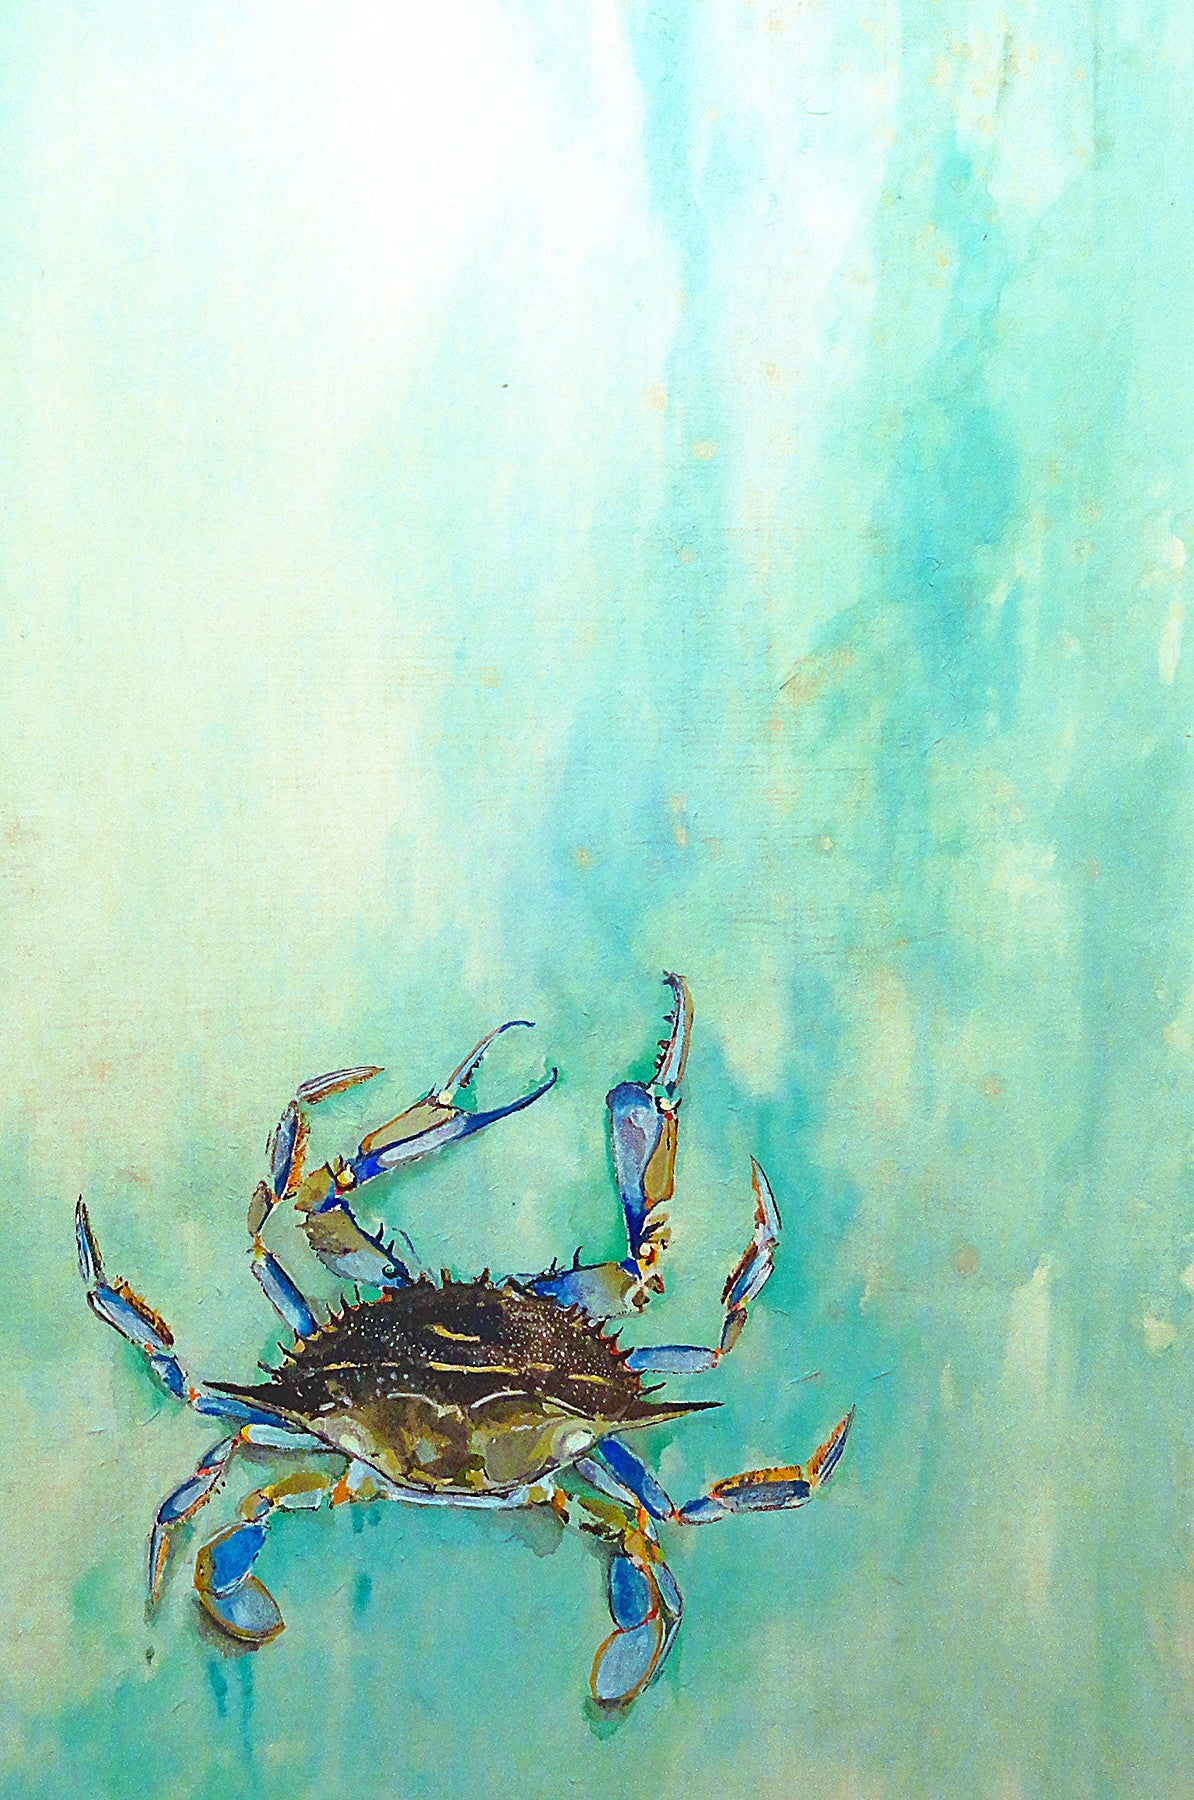 New Art - Blue Crab